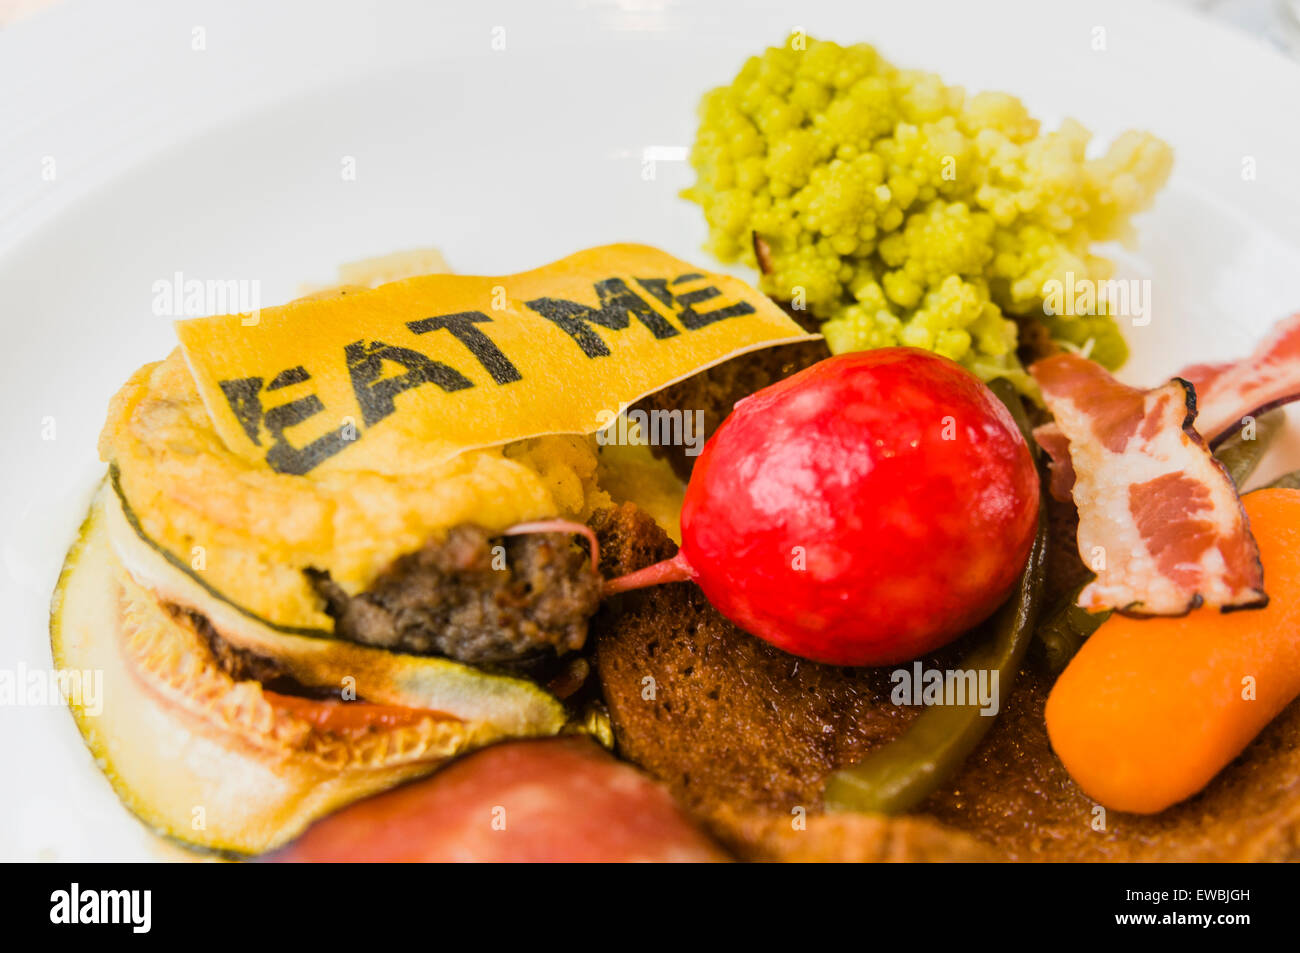 "Mangiare Me' etichetta sul 'A La moussaka che non è la moussaka', lo stufato di manzo con carne di maiale croccante, dolce e salato di verdure, sul tram Hoftrammm ristorante, Den Haag, Paesi Bassi. Foto Stock